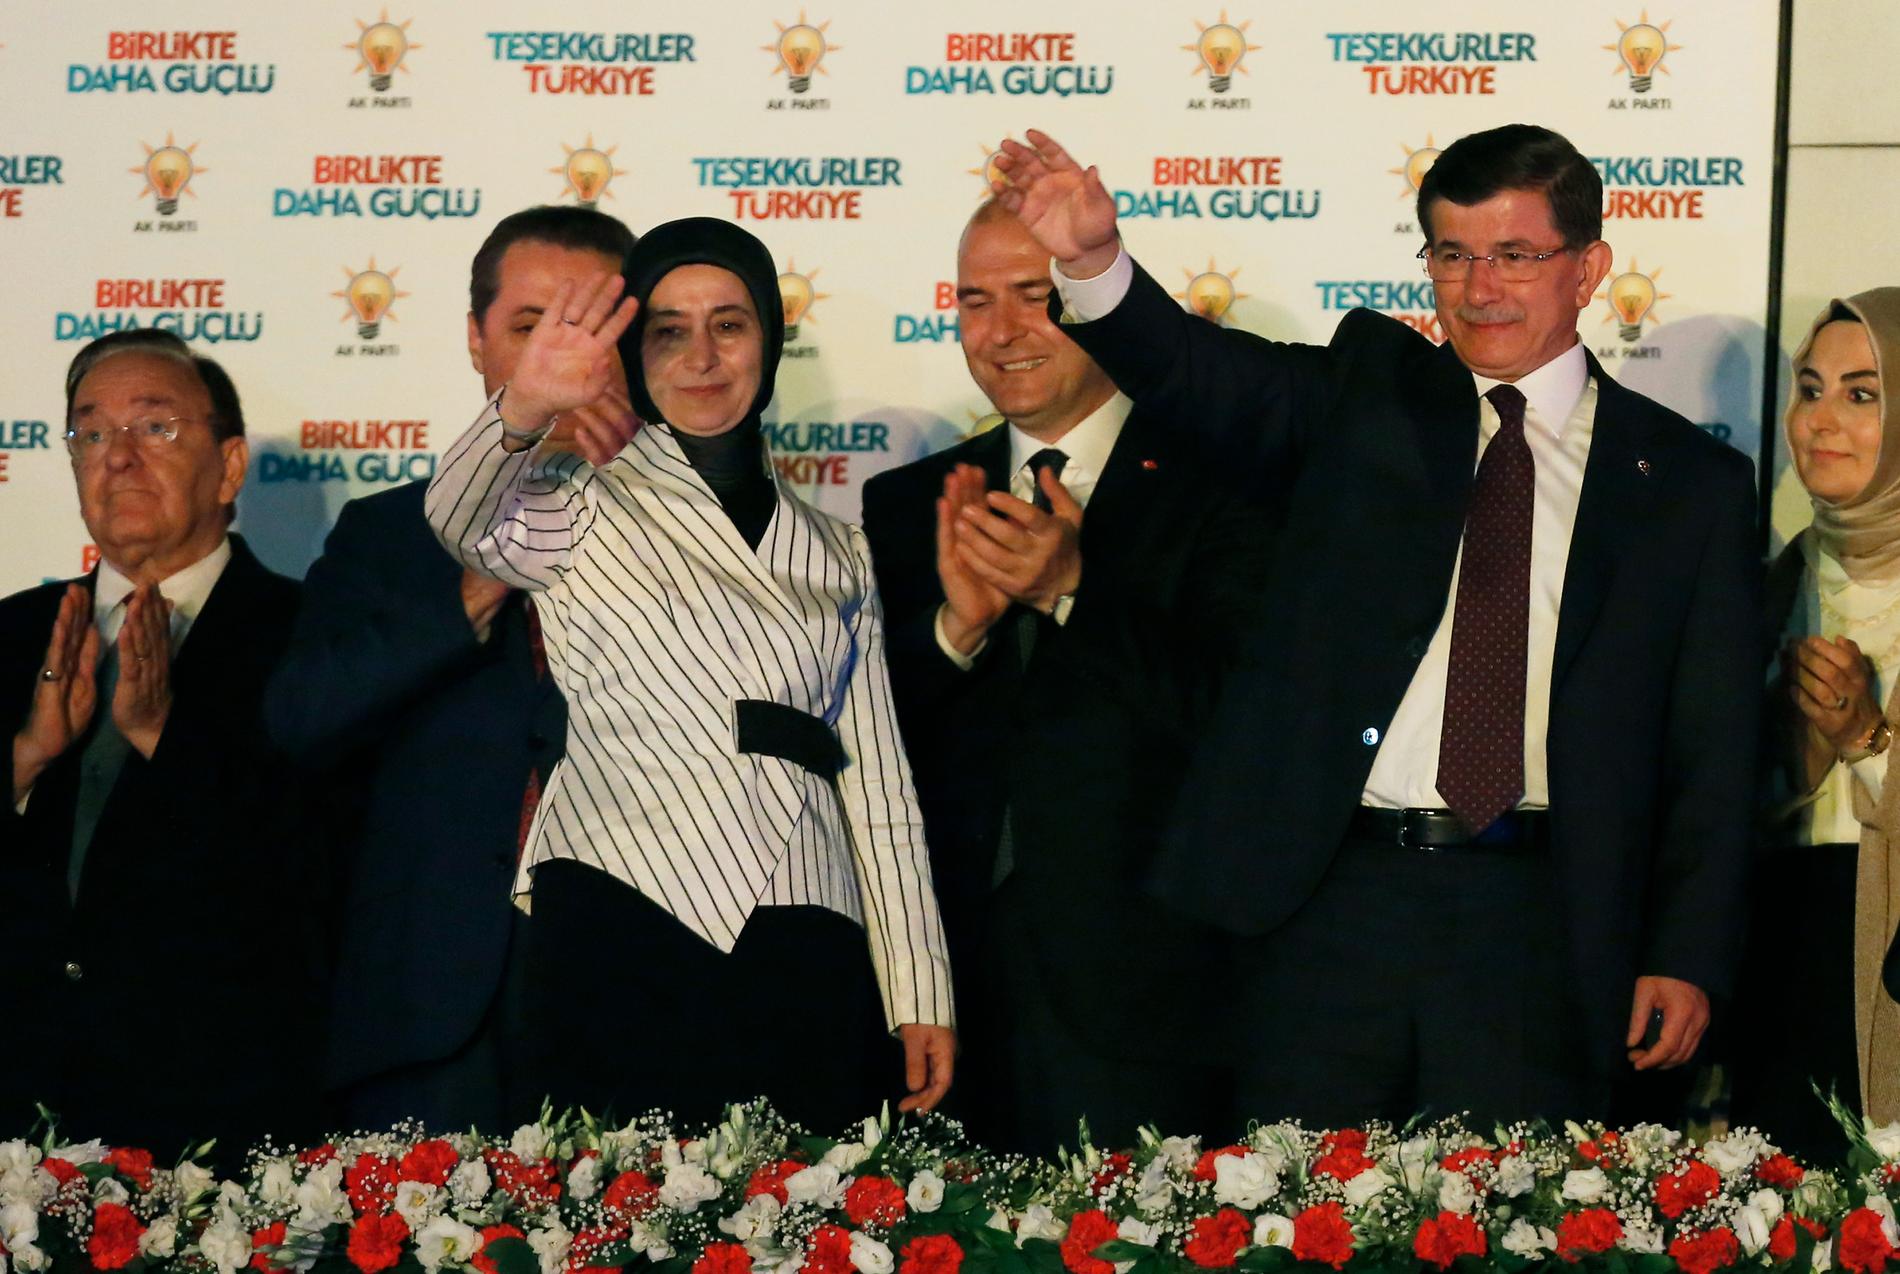 Turkiets premiärminister Ahmet Davutoglu (till höger) med sin fru Sare vinkar från AKP:s högkvarter.